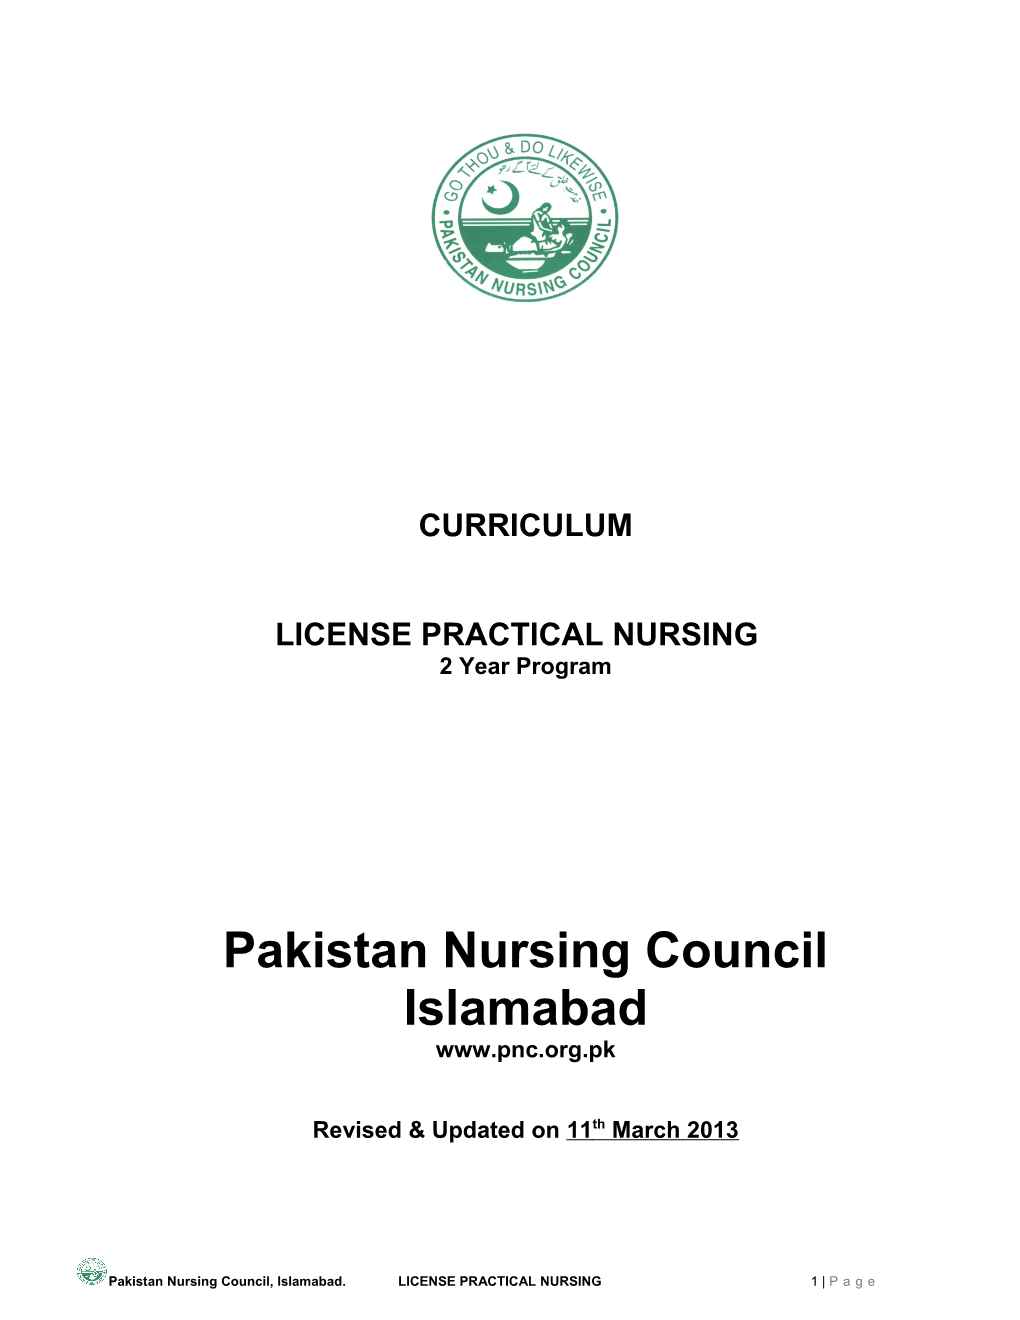 License Practical Nursing